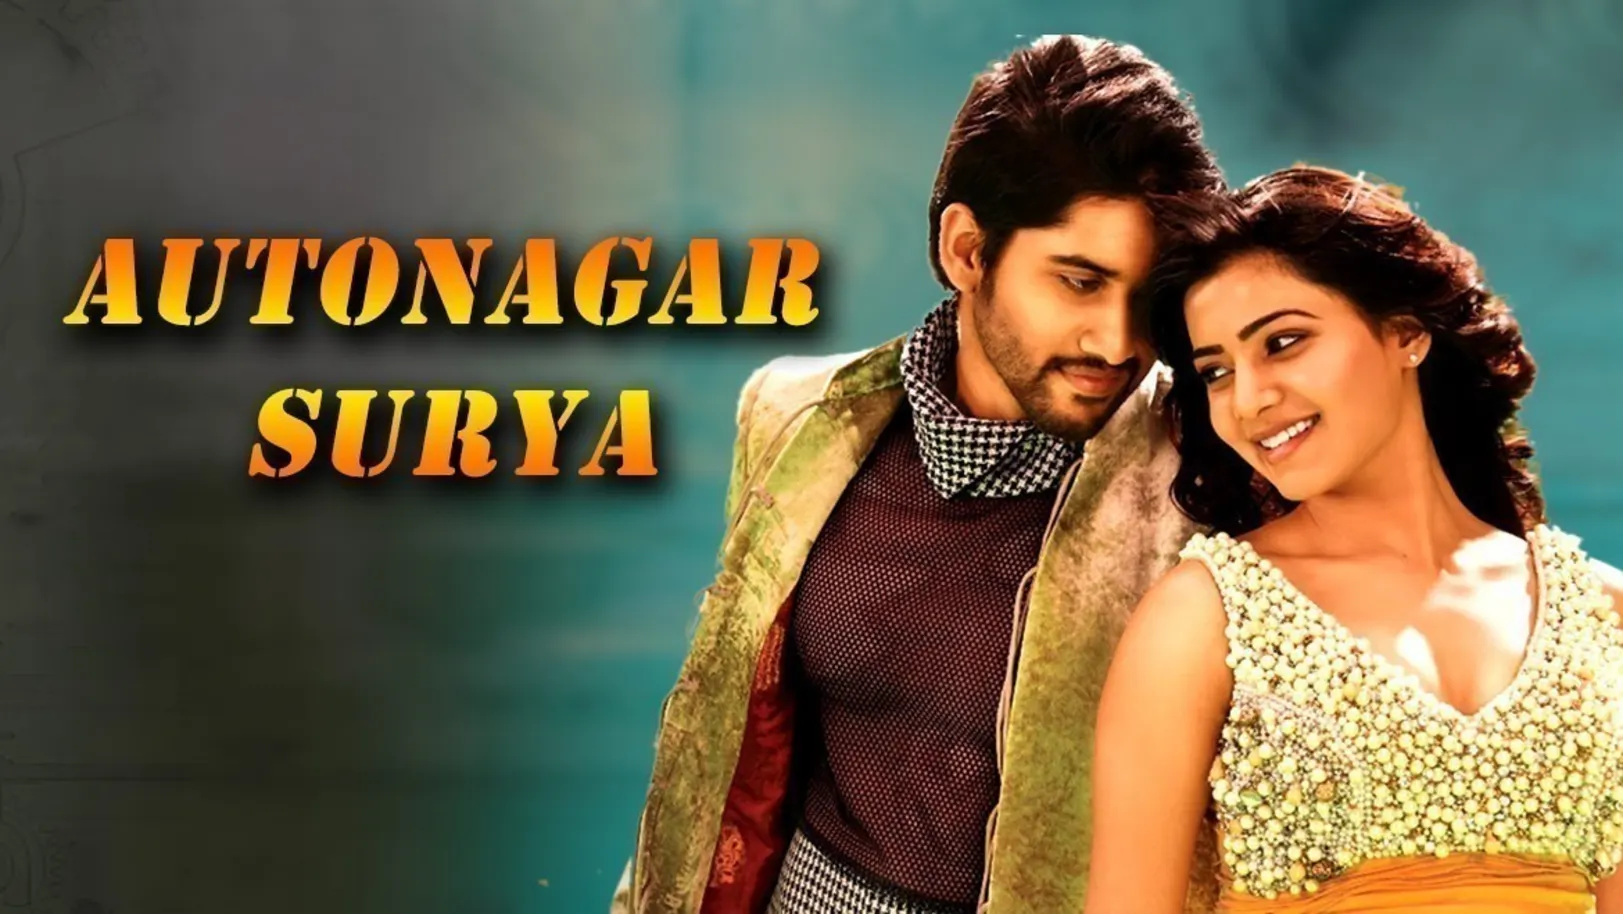 Autonagar Surya Movie